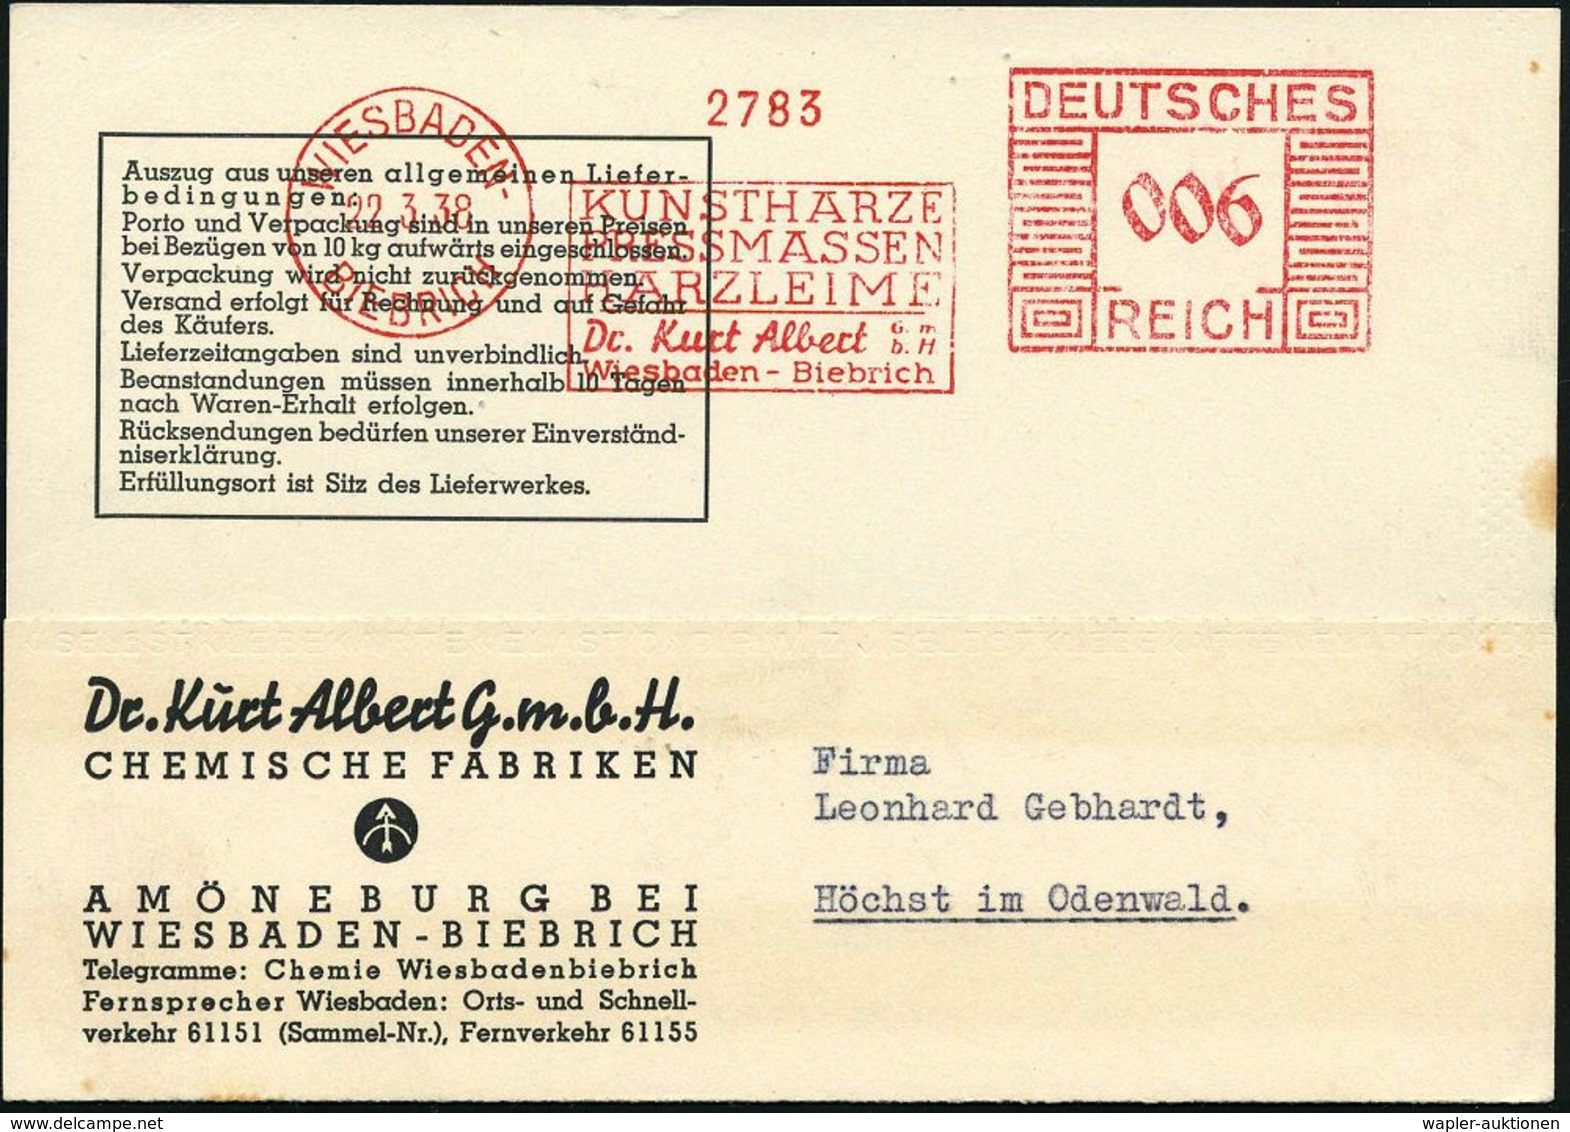 KUNSTSTOFFE & -FASERN / PLASTIK : WIESBADEN-/ BIEBRICH/ KUNSTHARZE/ PRESSMASSEN/ HARZLEIME/ Dr.Kurt Albert.. 1938 (22.3. - Chemie